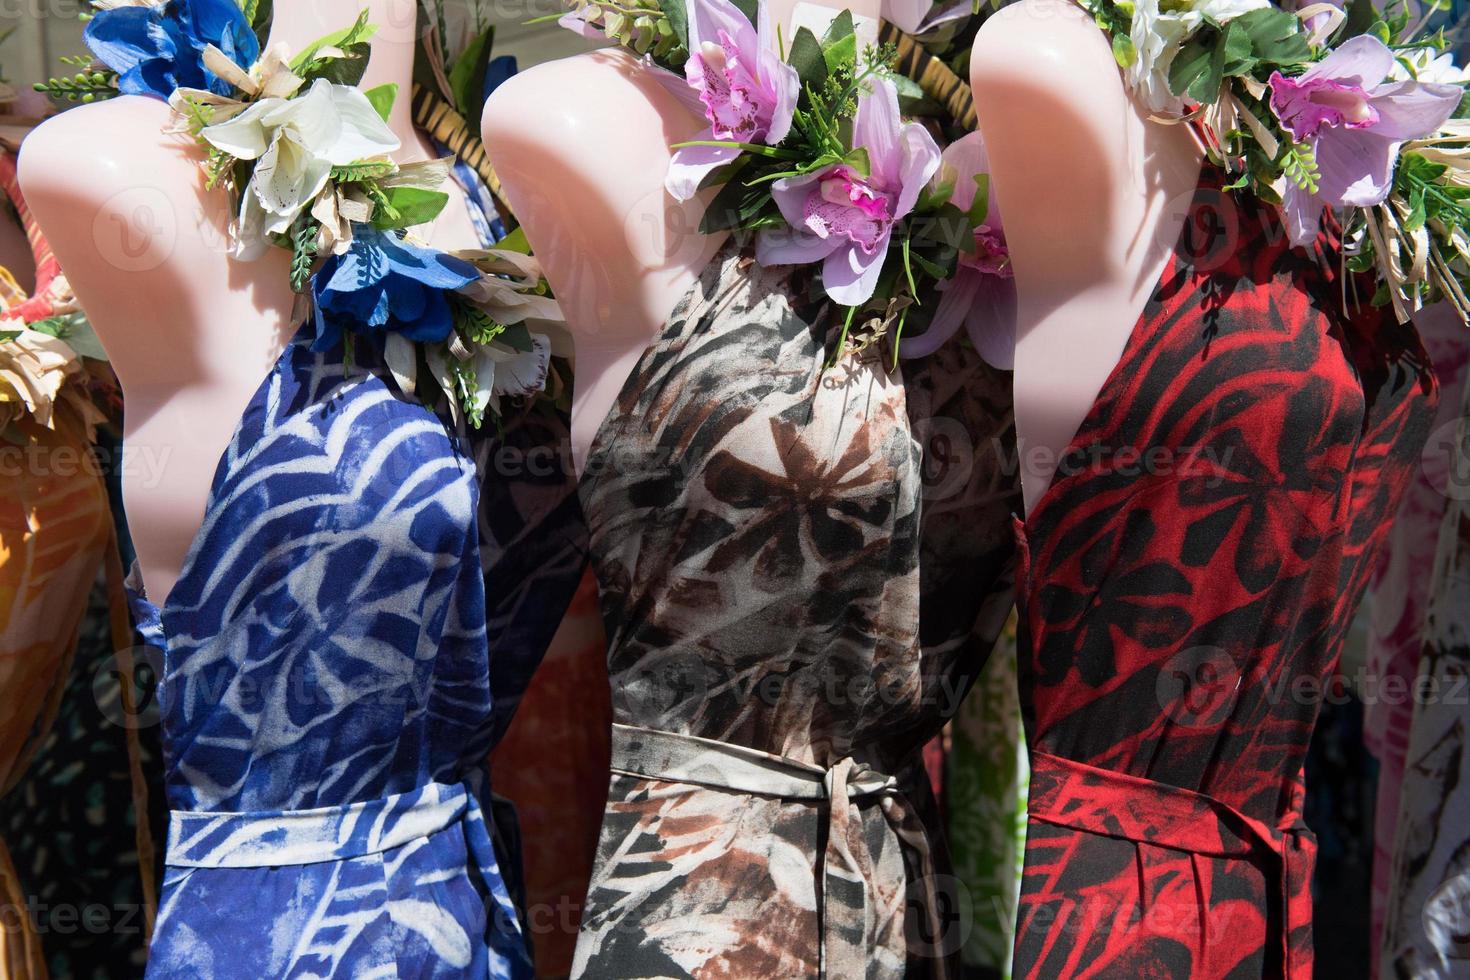 farbenfroher Pareo und polynesisches Kleid zum Verkauf auf dem Markt foto